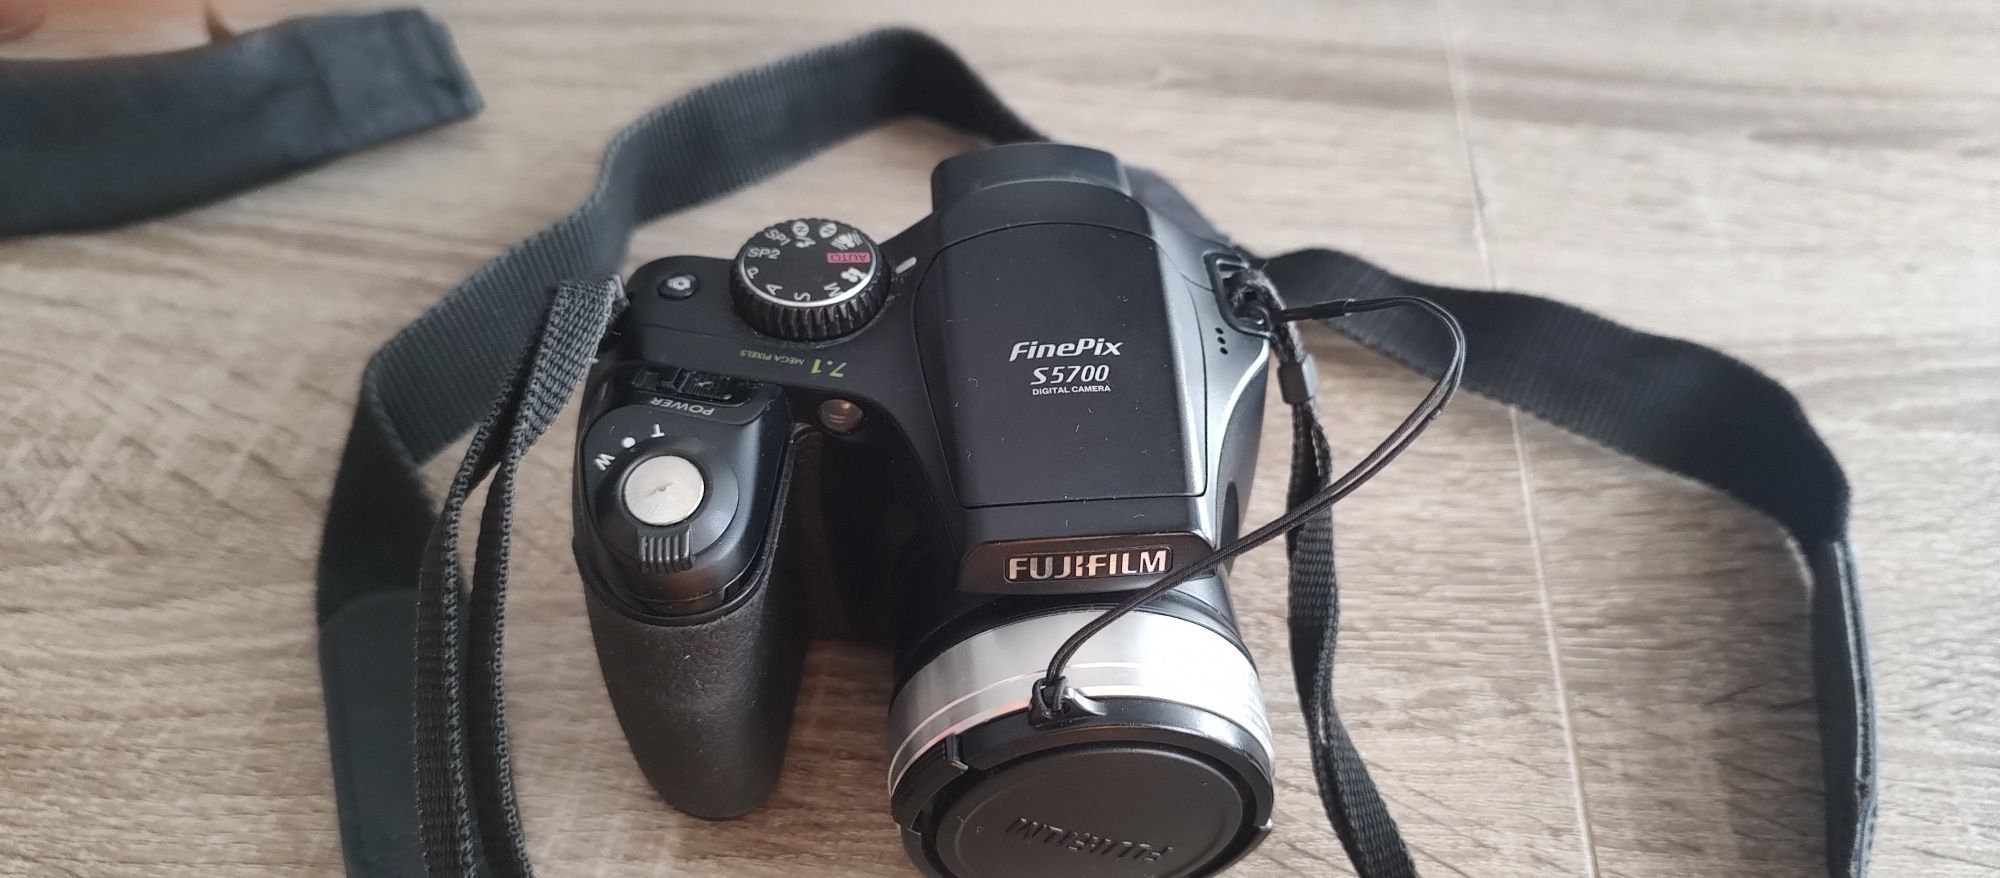 Aparat Fujifilm finePix s5700